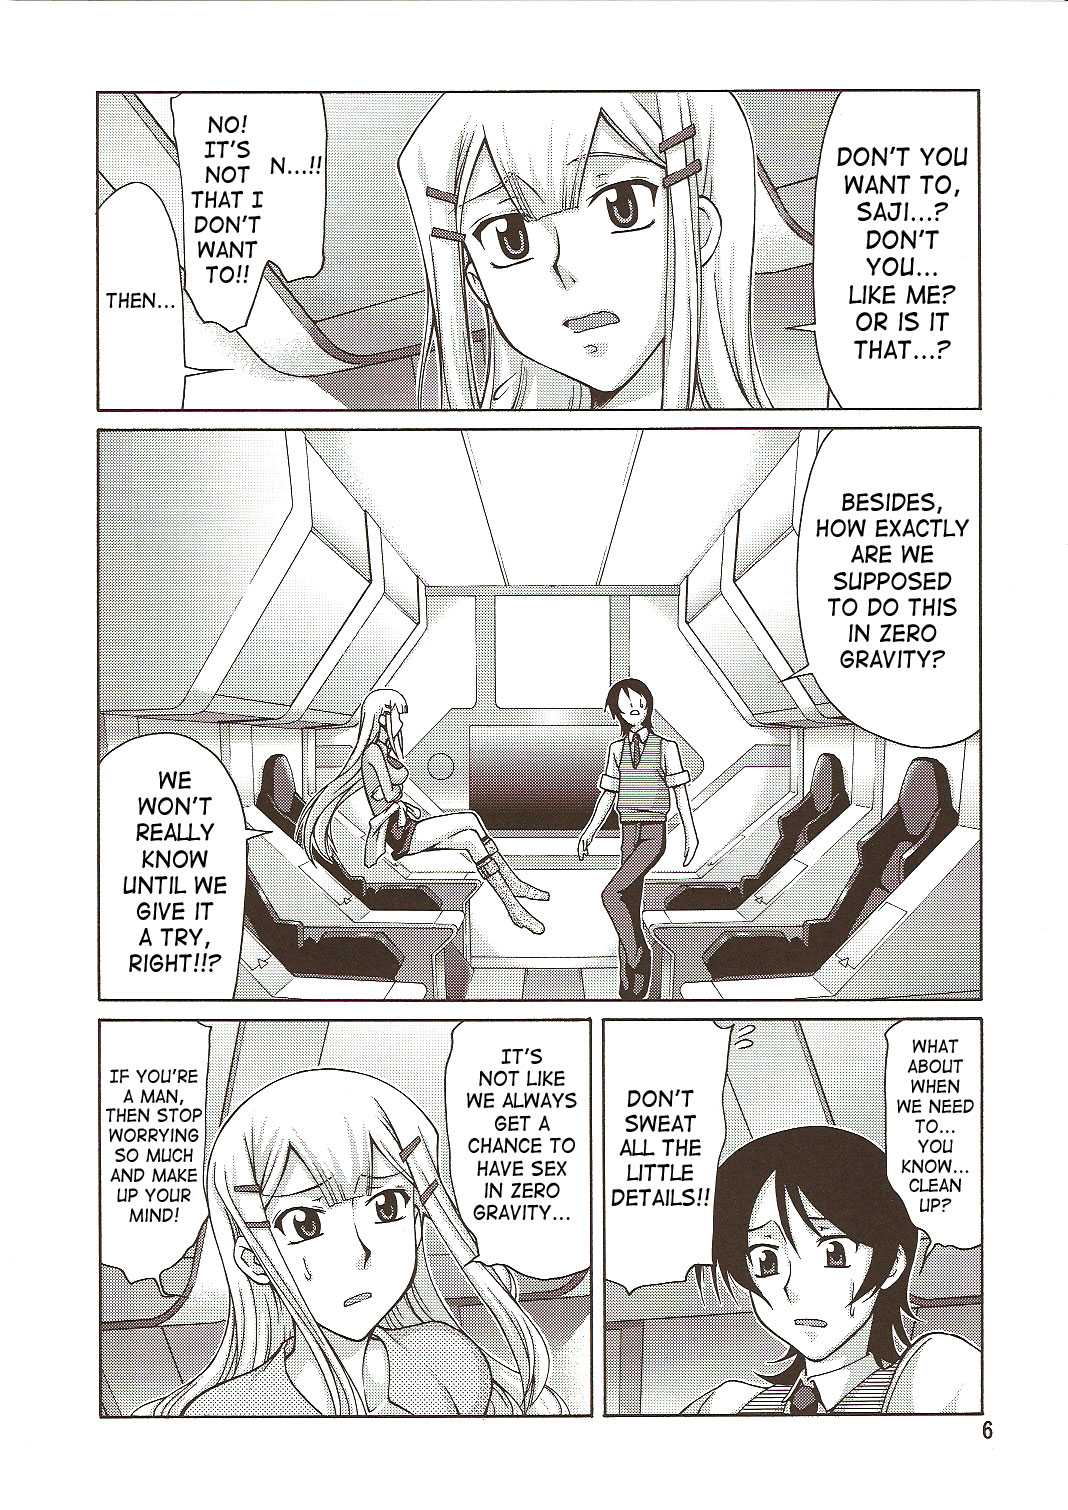 [Gold Rush] Gundam 00 - Comic Daybreak Vol.1 (English) 